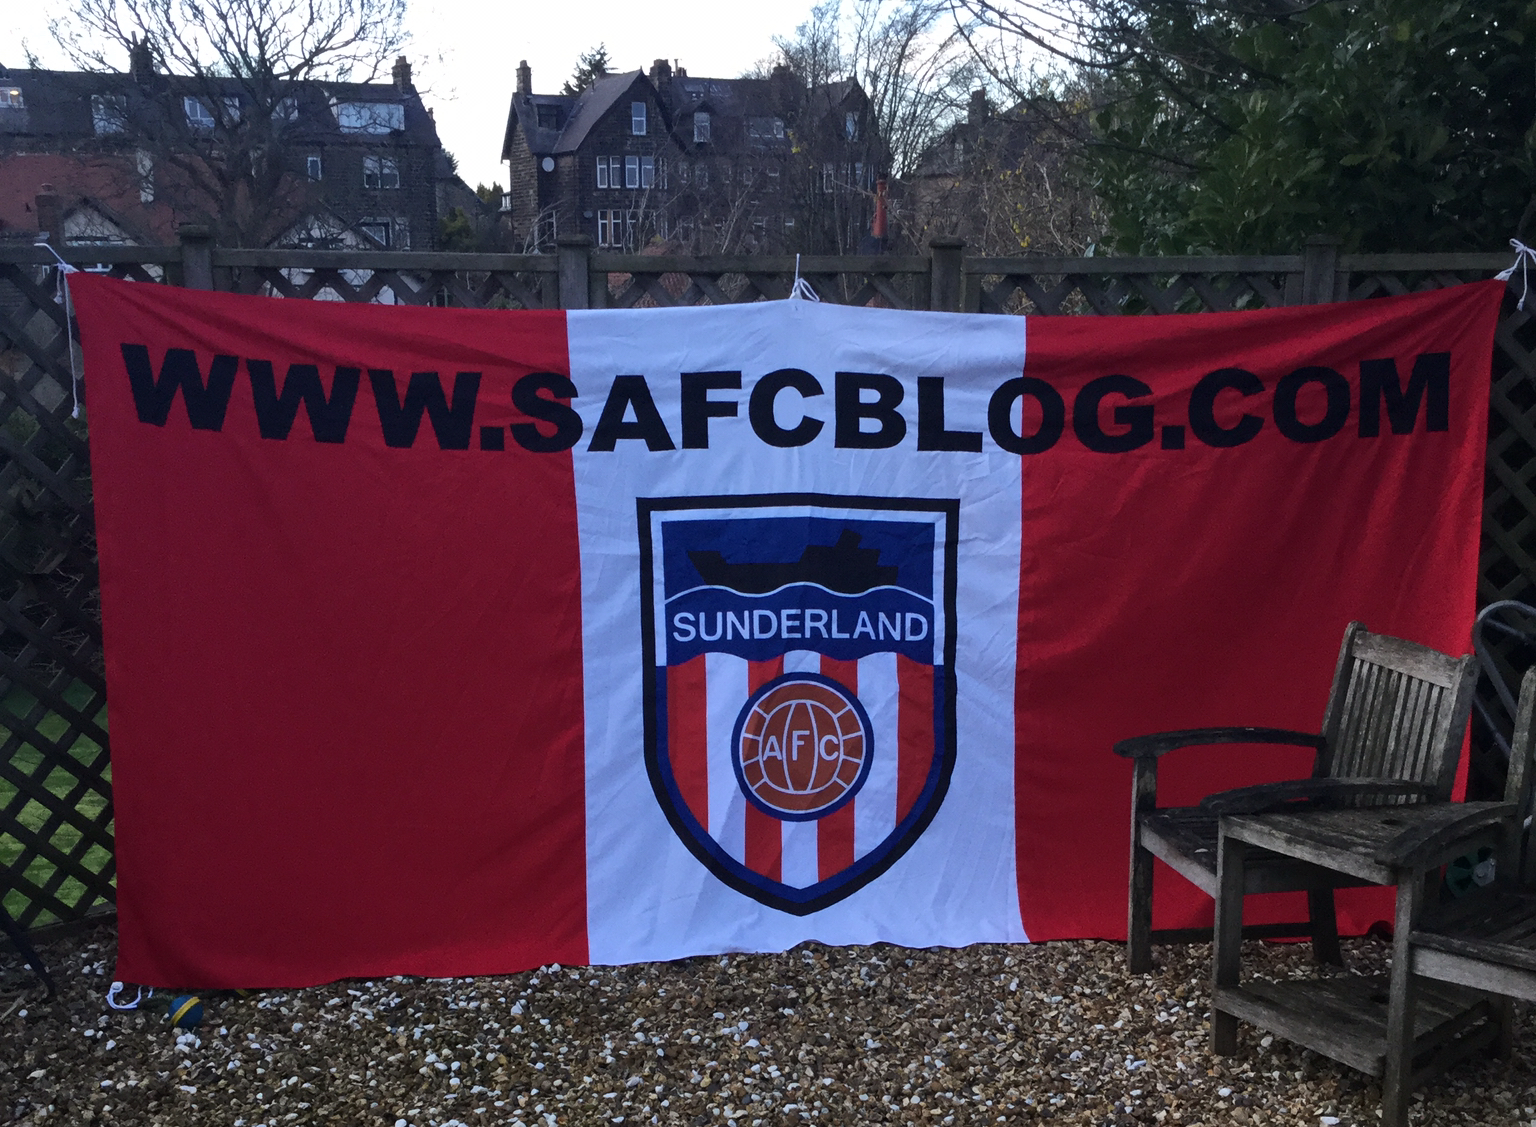 SAFC Blog flag number 2